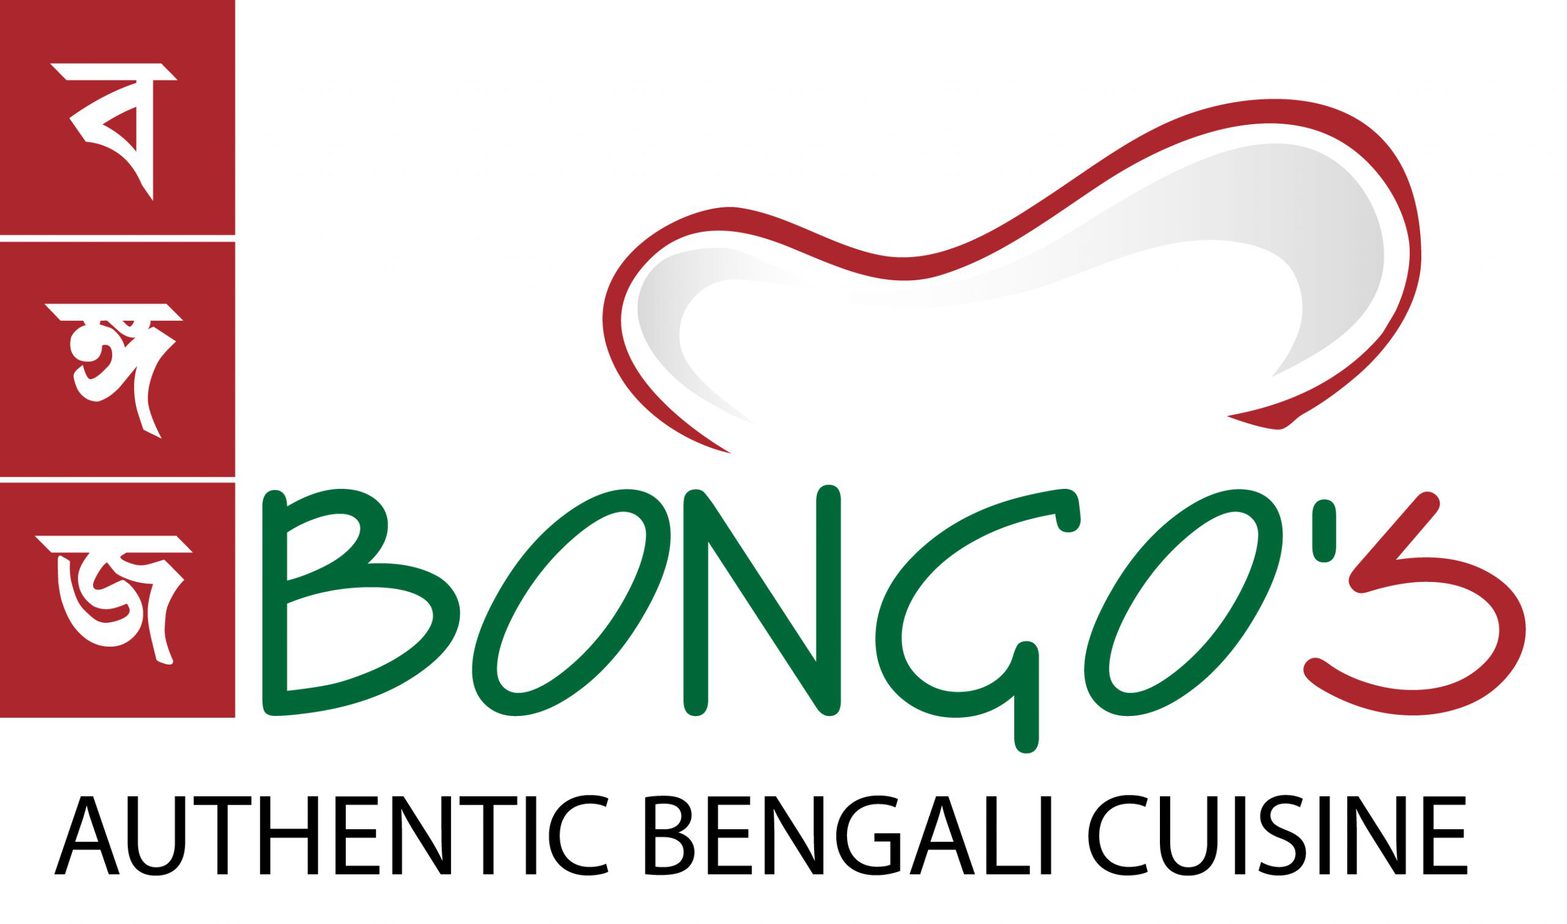 Bongo's Authentic Bengali Cuisine